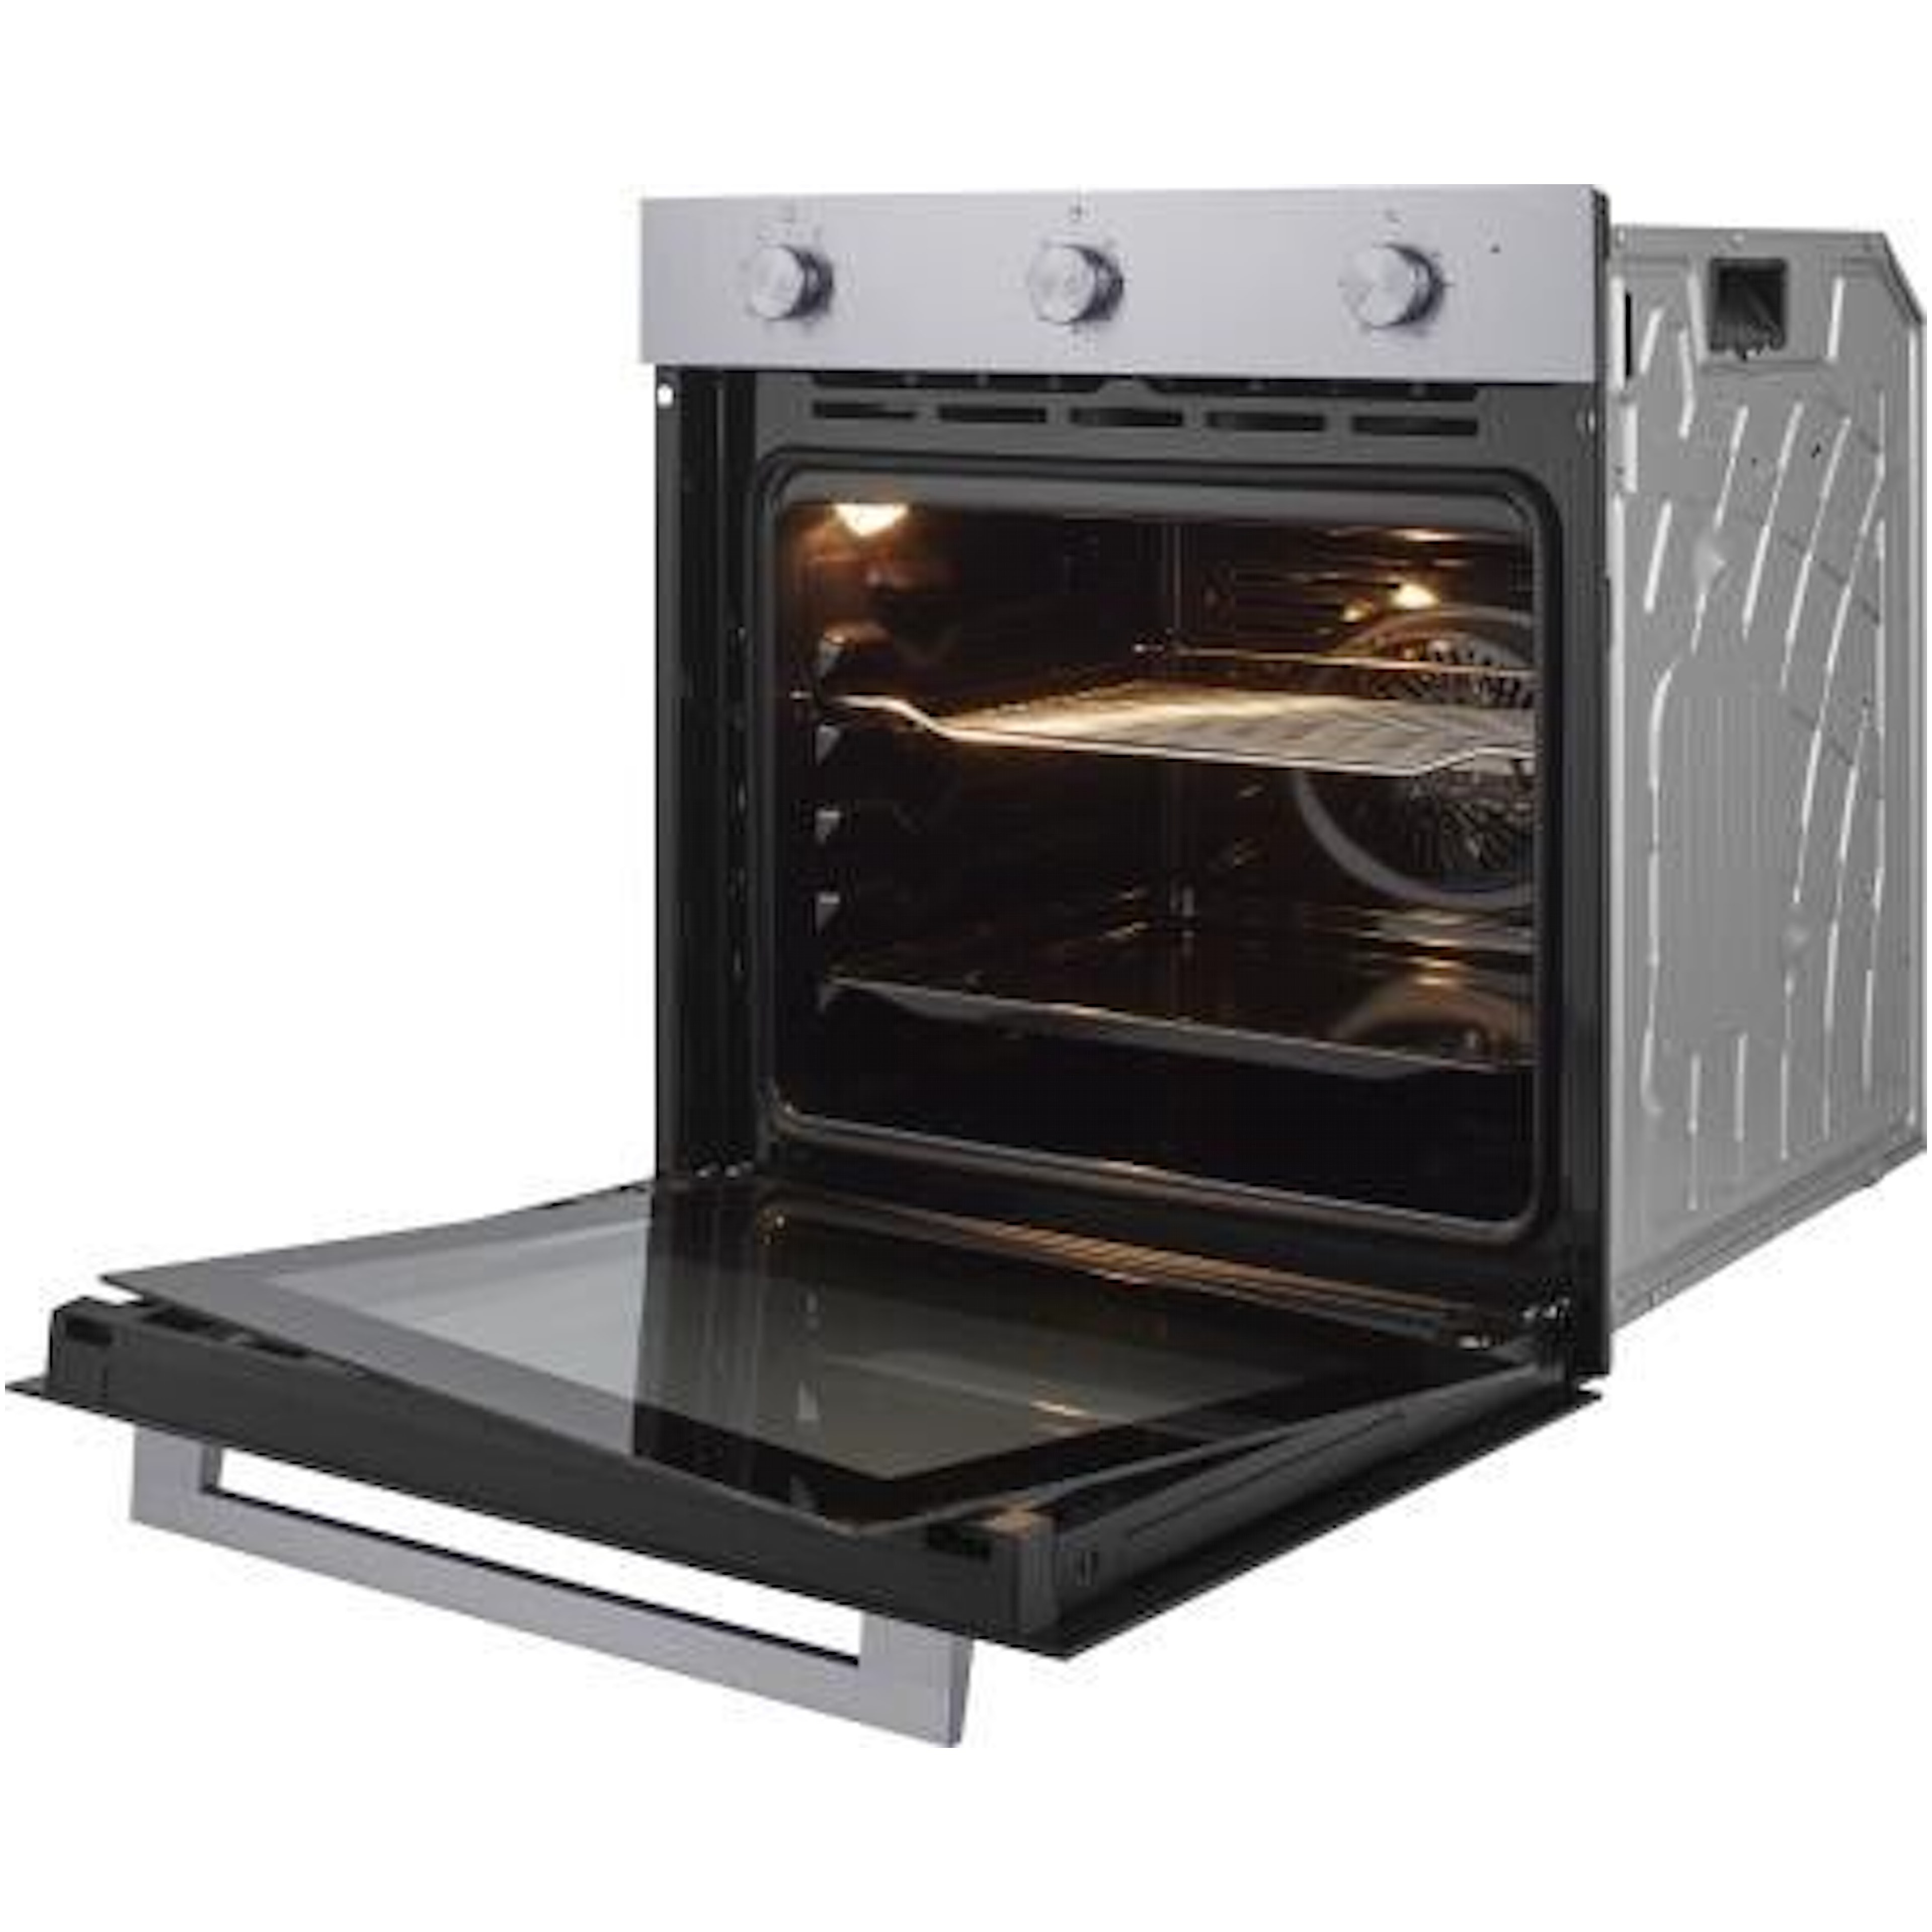 Etna oven OM265RVS afbeelding 3